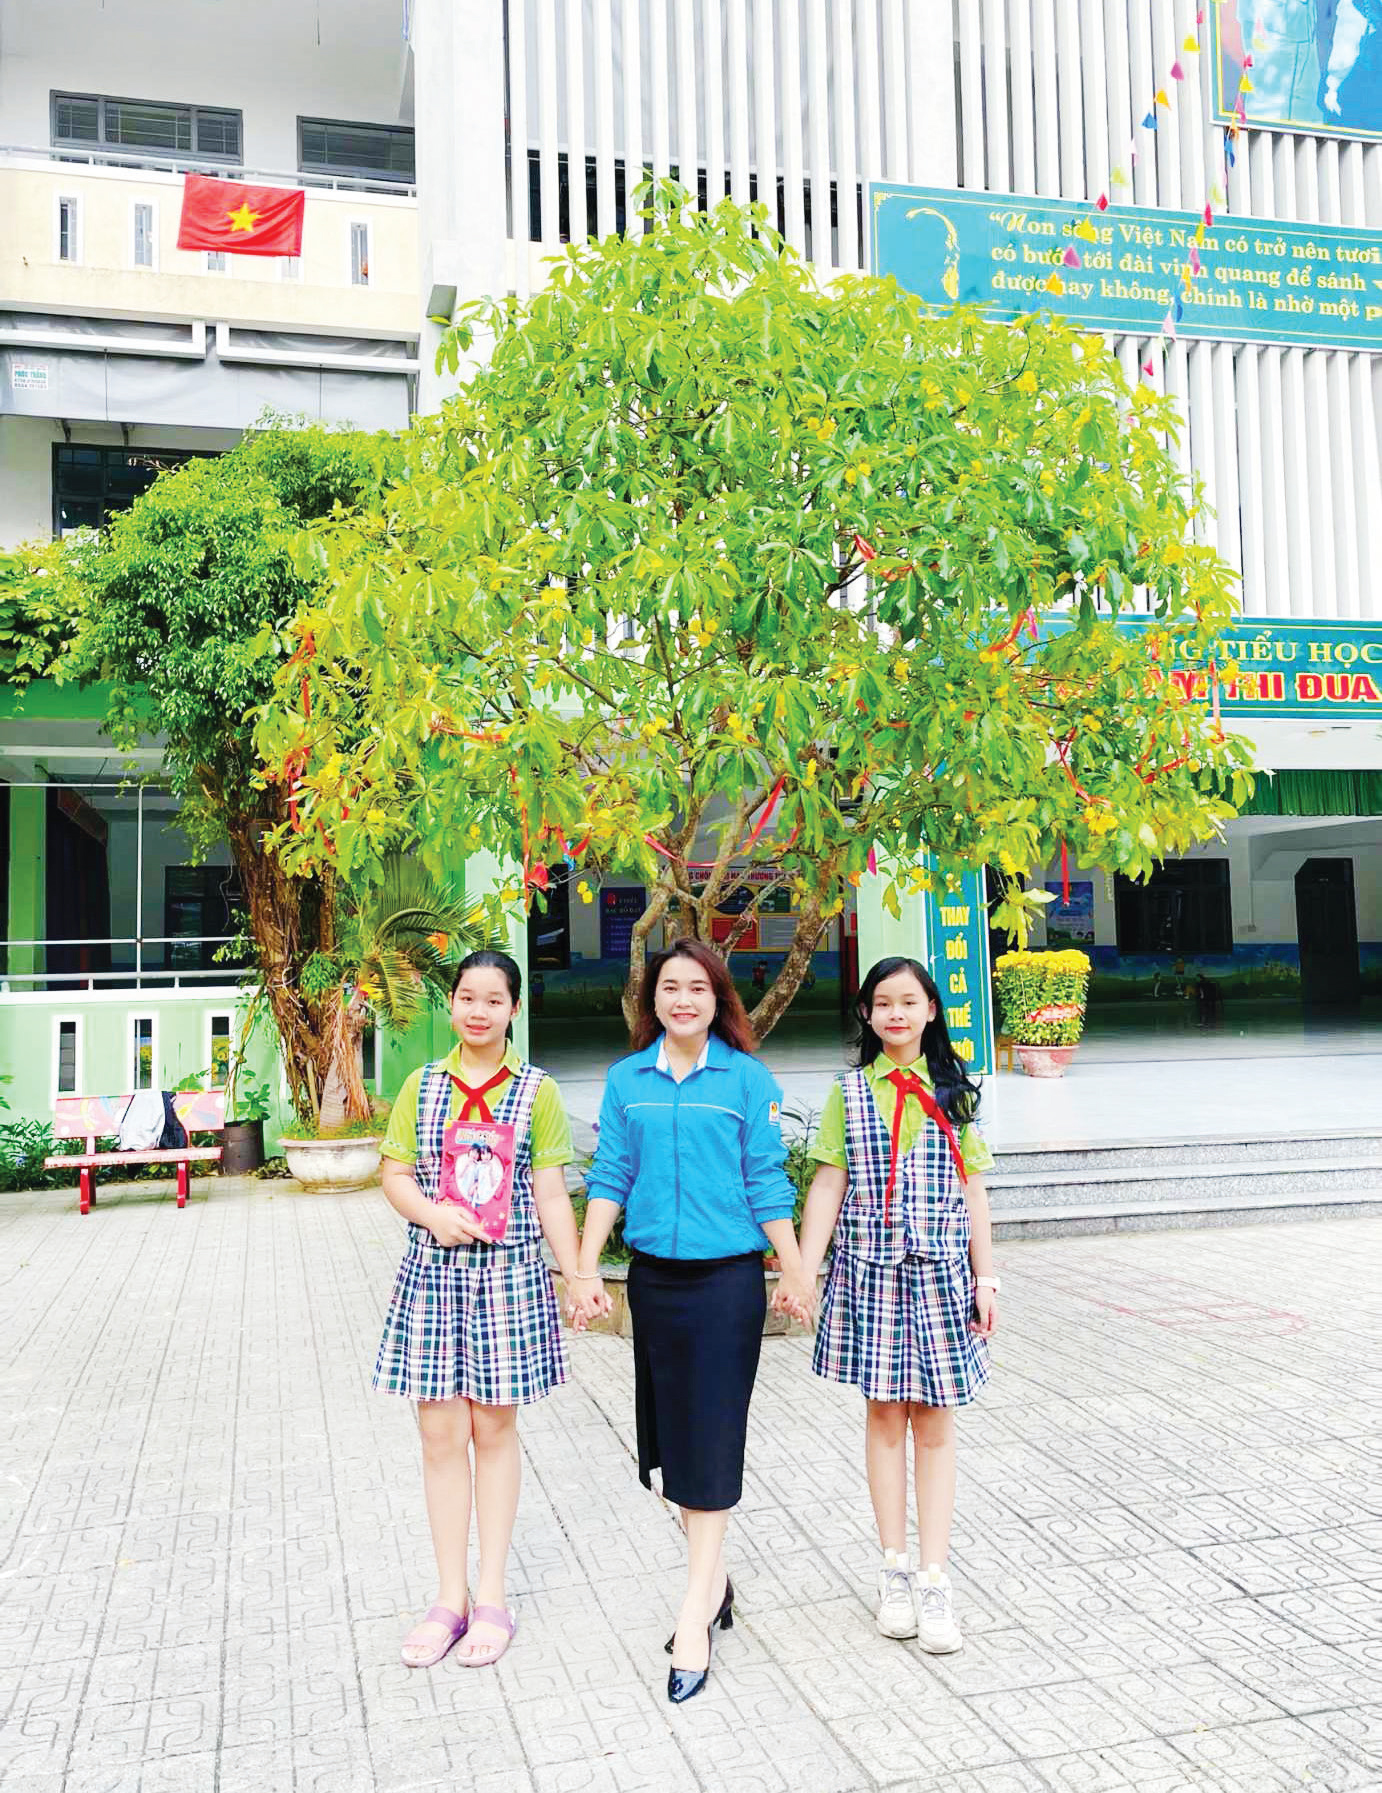 Cô Nguyễn Thị Hải Vân
Giáo viên, Tổng phụ trách Đội
cùng các bạn Đội viên.